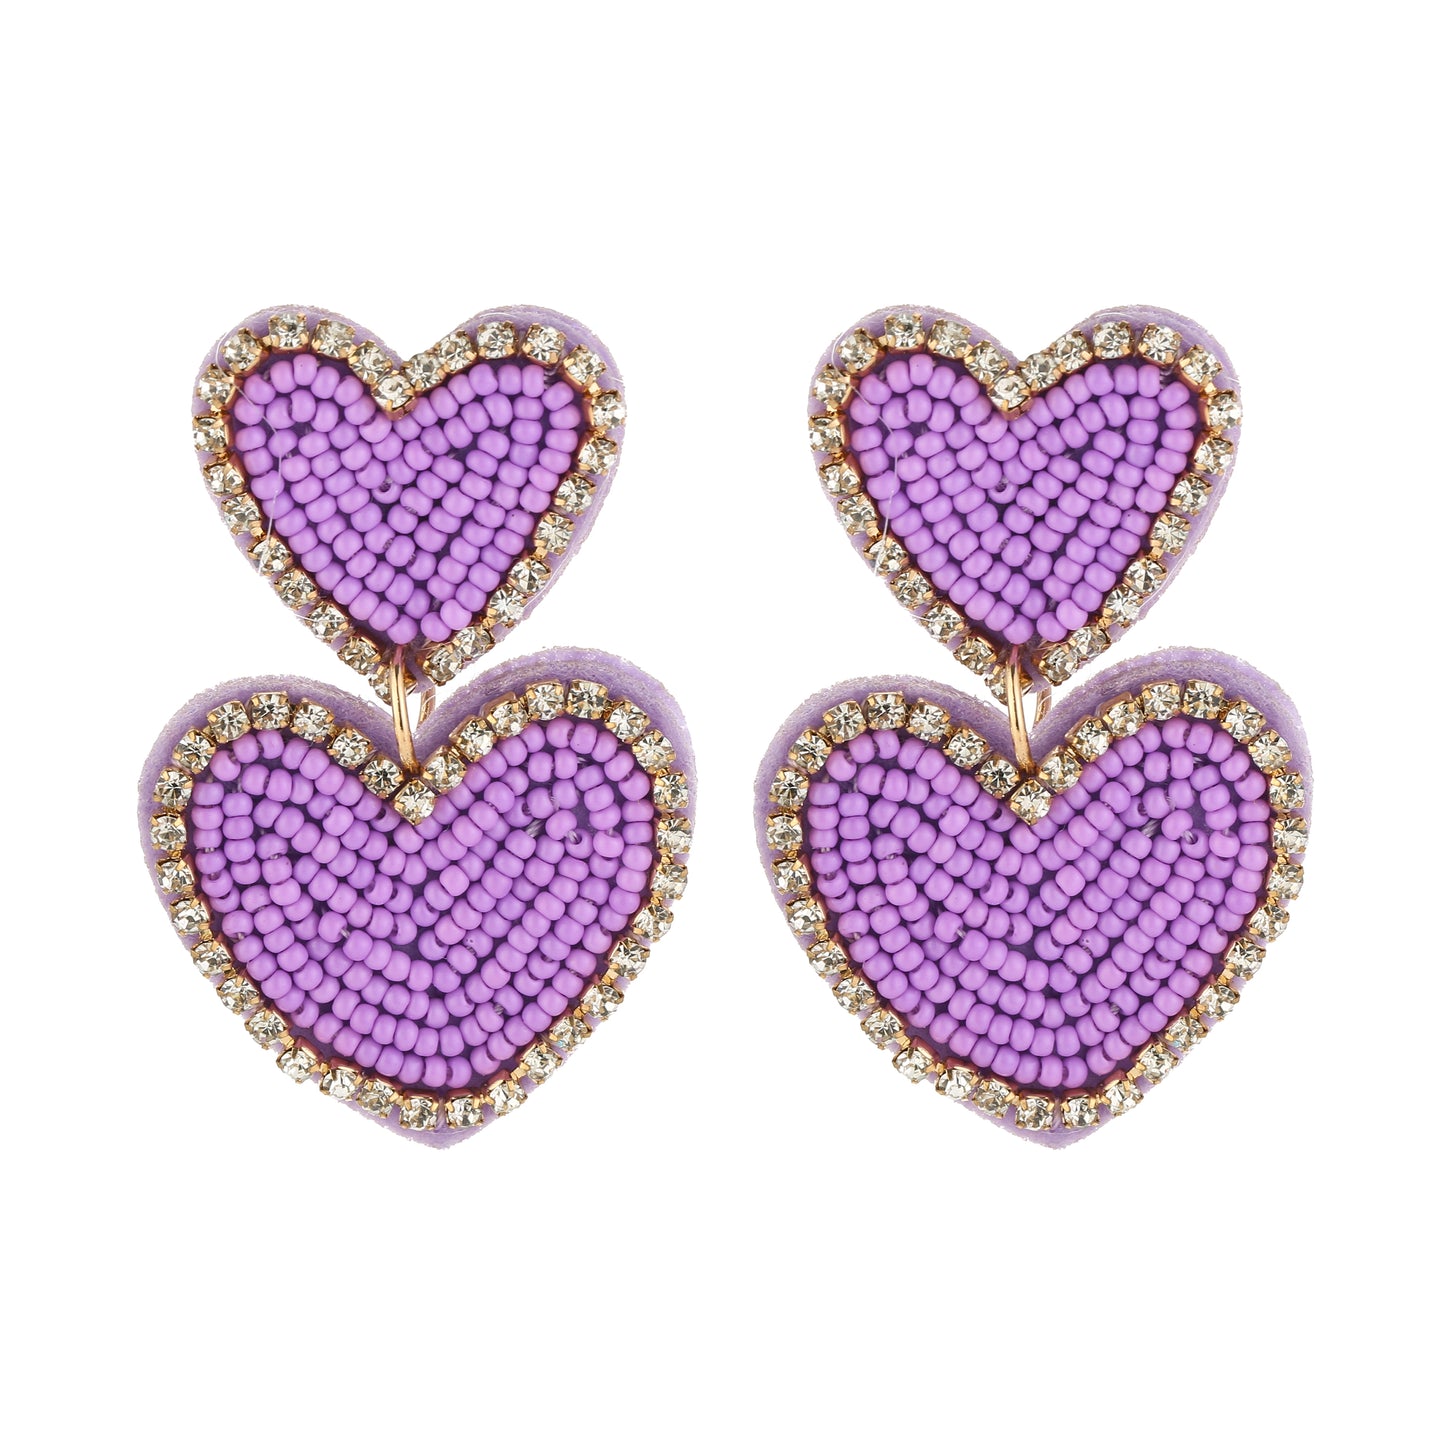 LOVE Beads Earrings - Paars